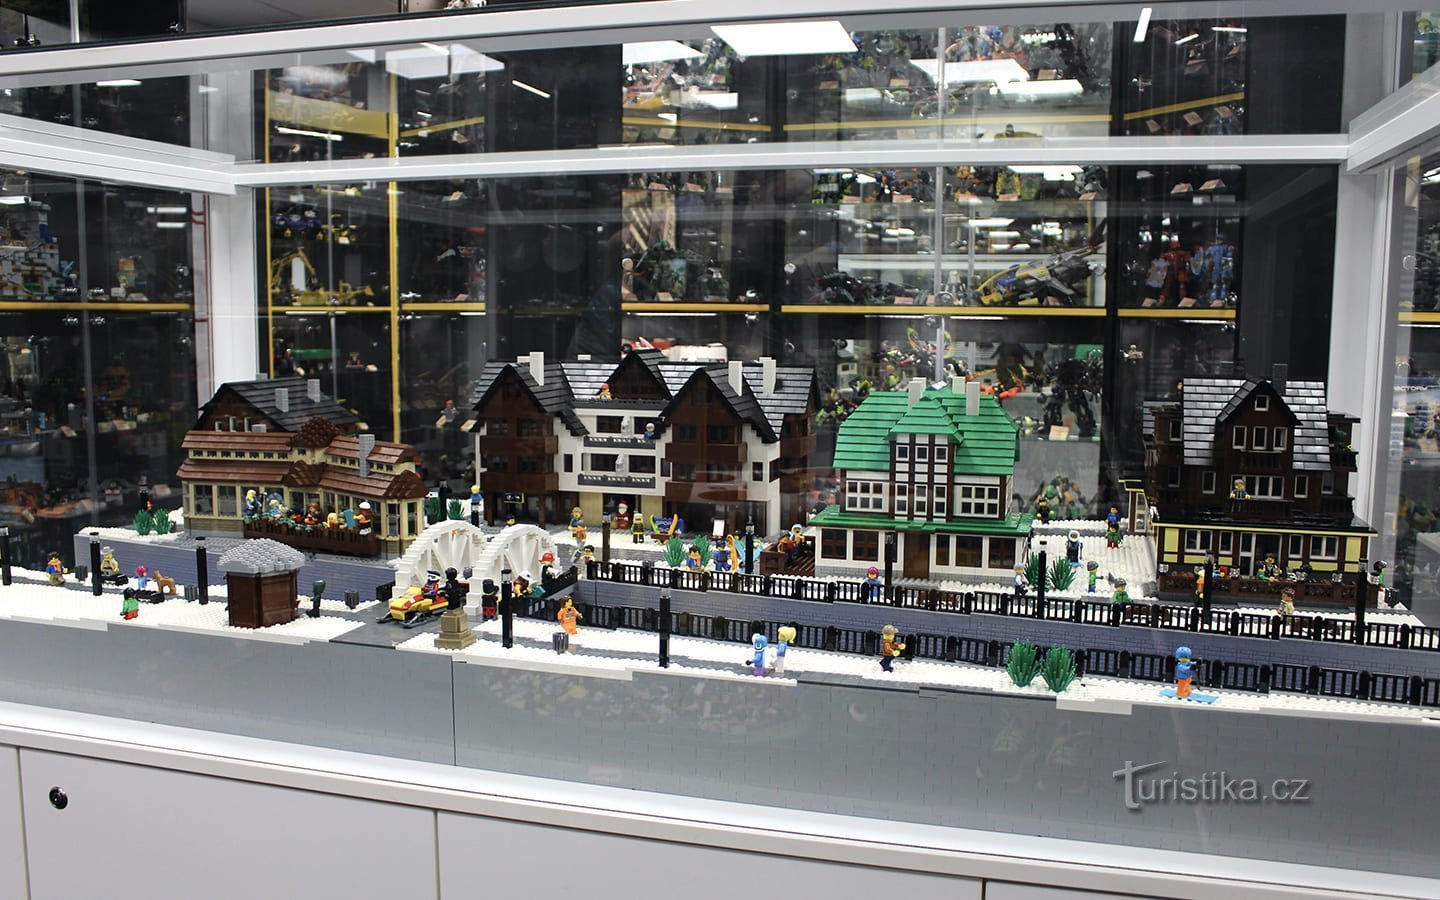 Legomuseet Špindlerův Mlýn